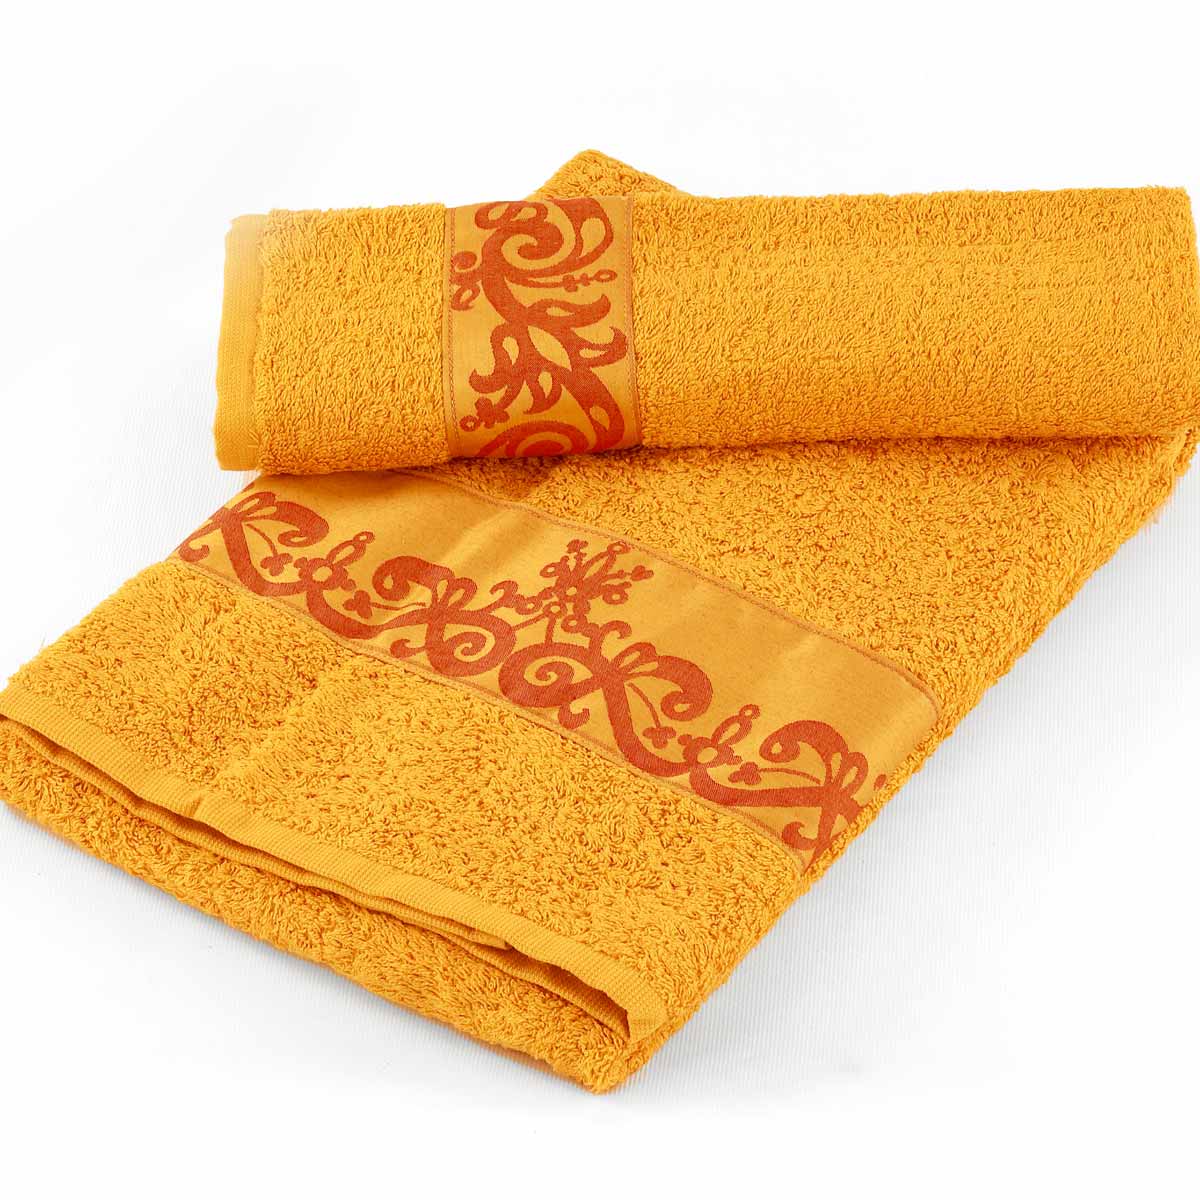 1+1 asciugamani da bagno viso e ospite di colore senape con balza in raso marabò e misure maxi